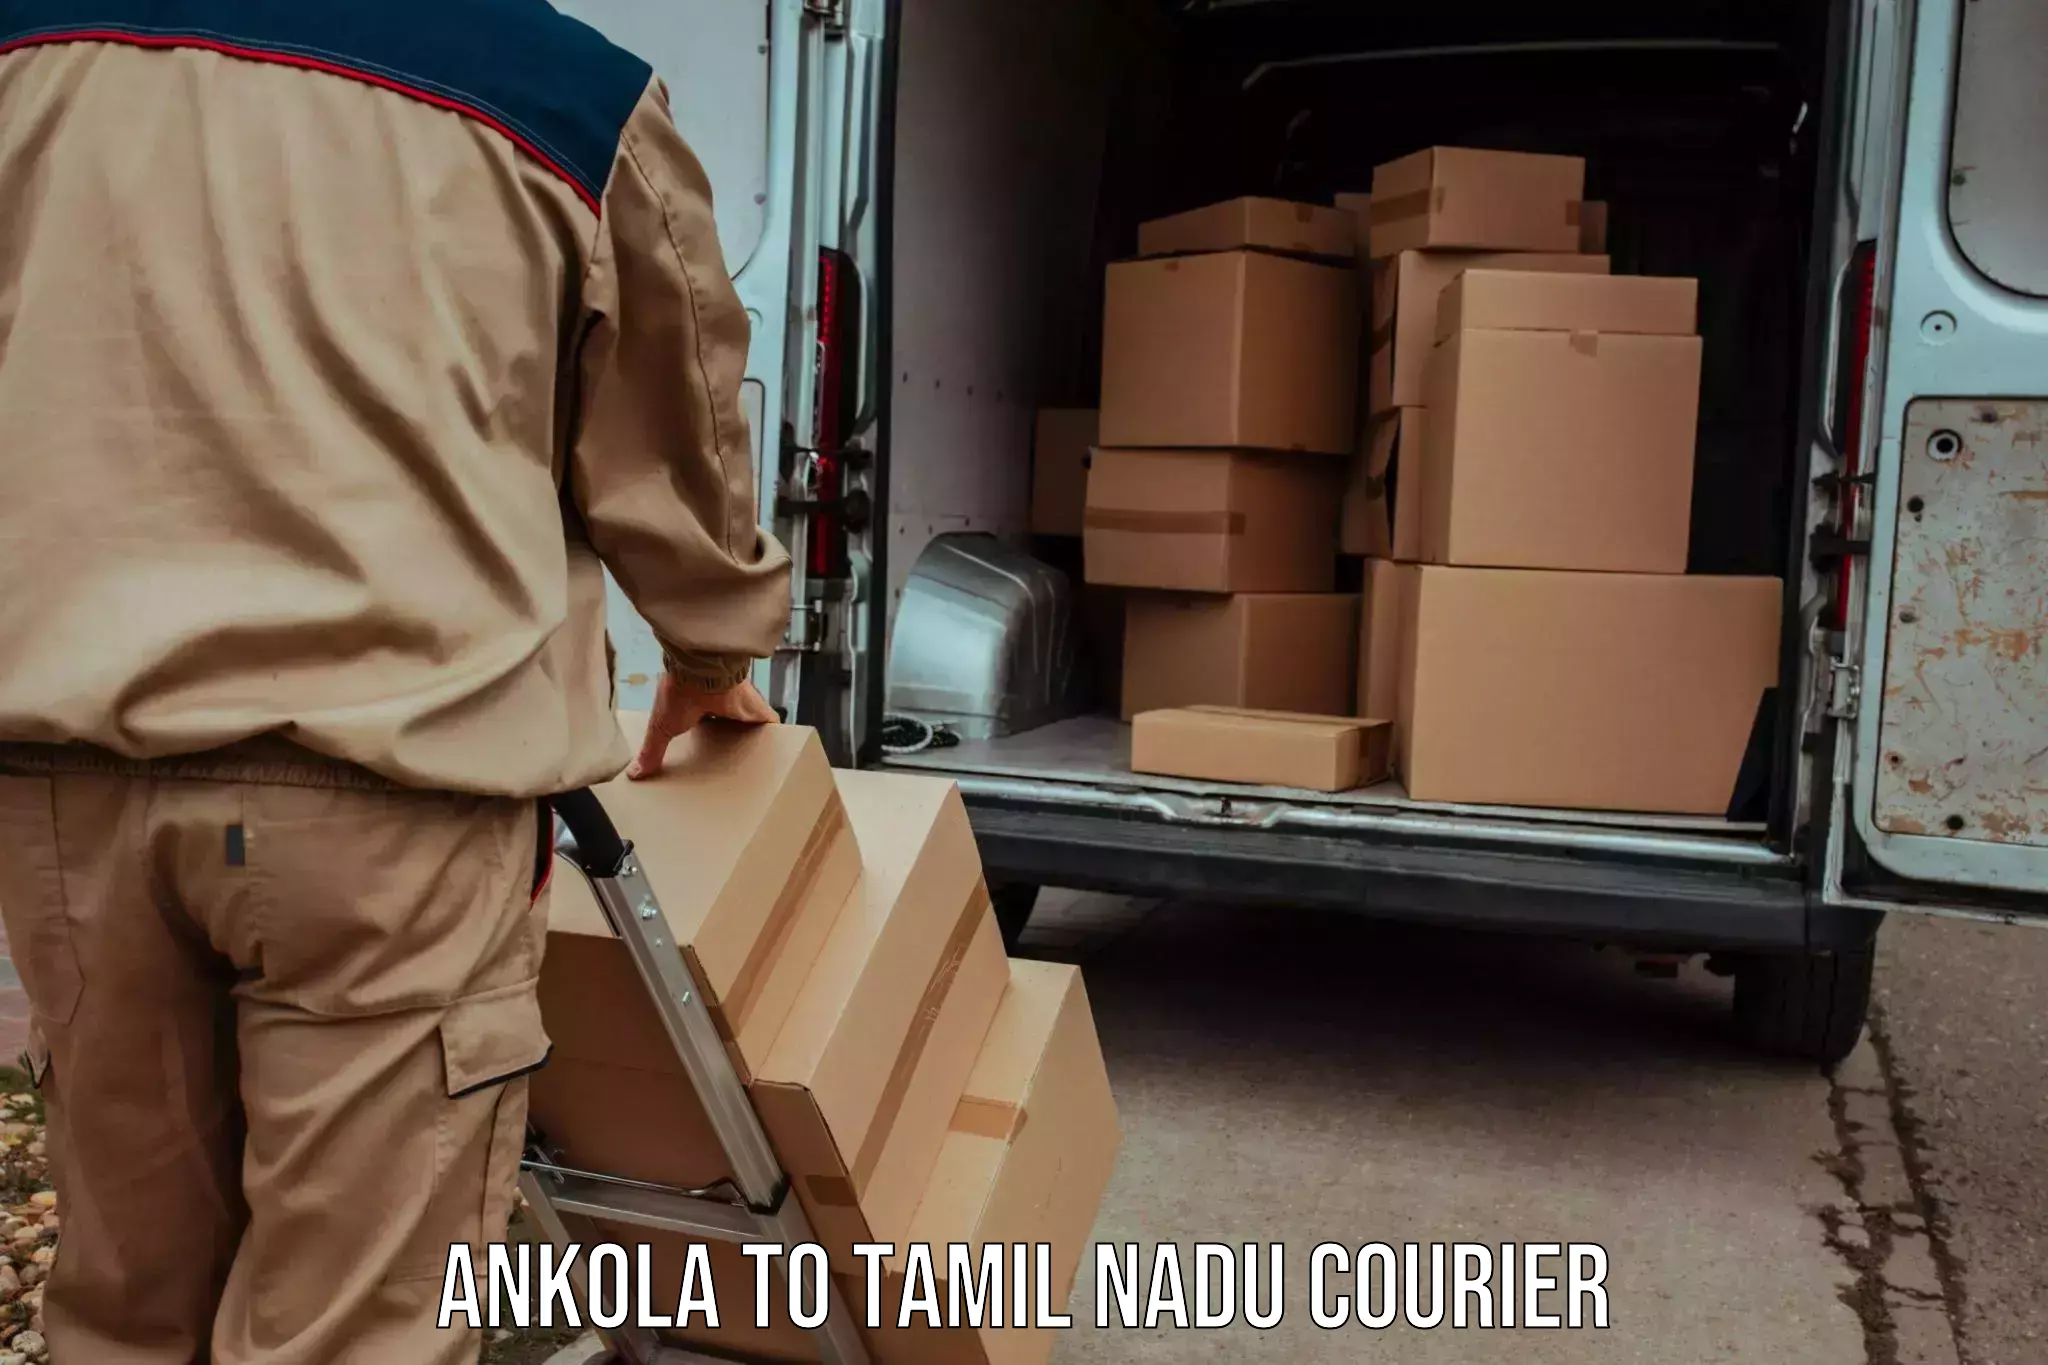 Modern courier technology Ankola to Villupuram